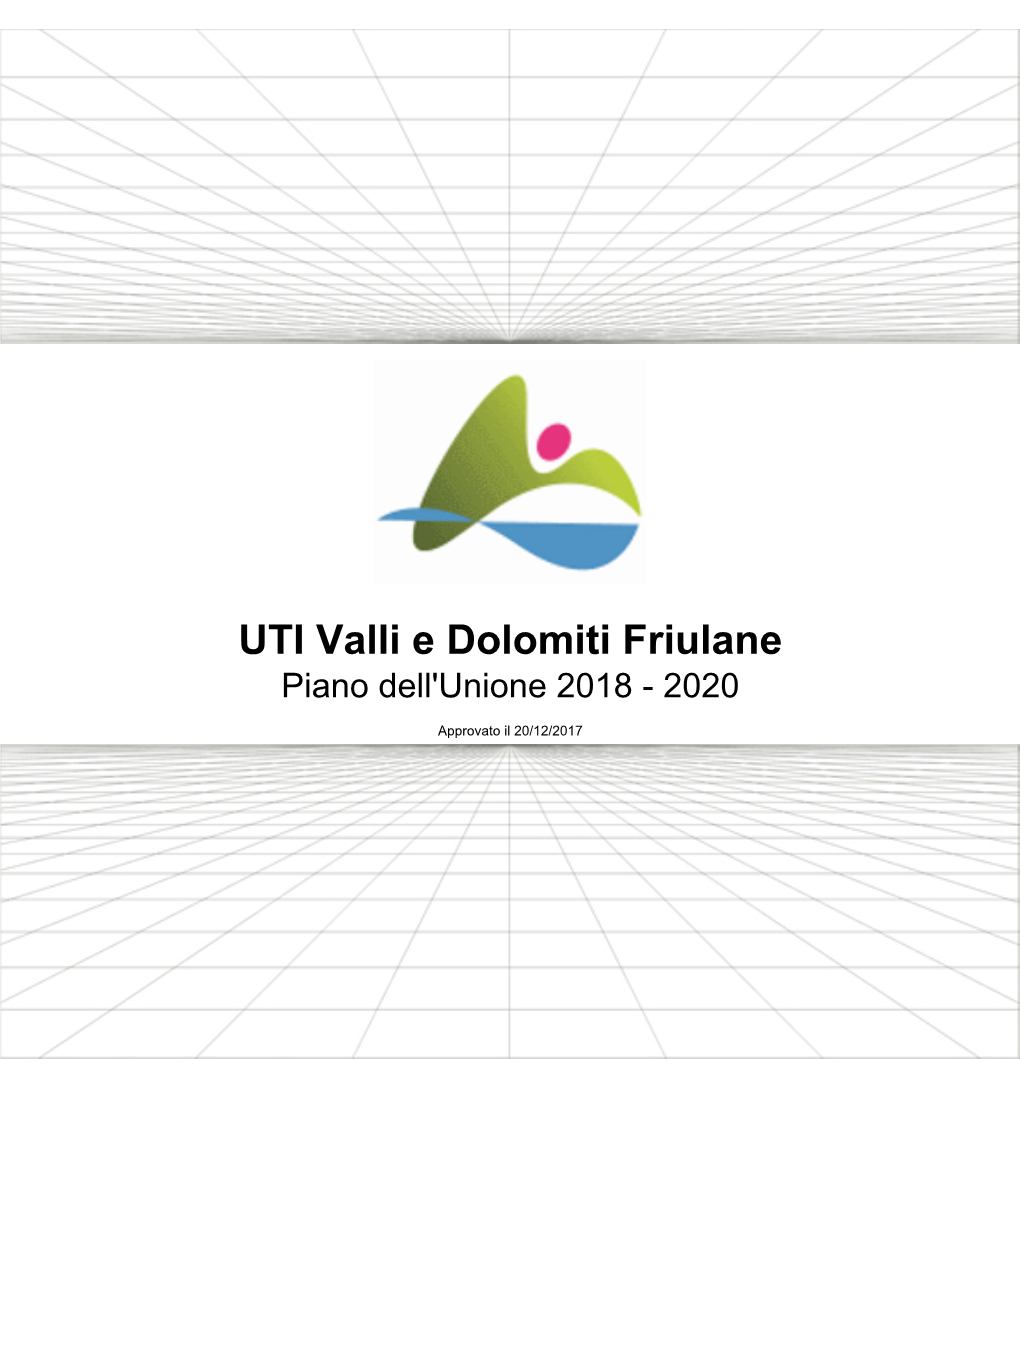 UTI Valli E Dolomiti Friulane Piano Dell'unione 2018 - 2020